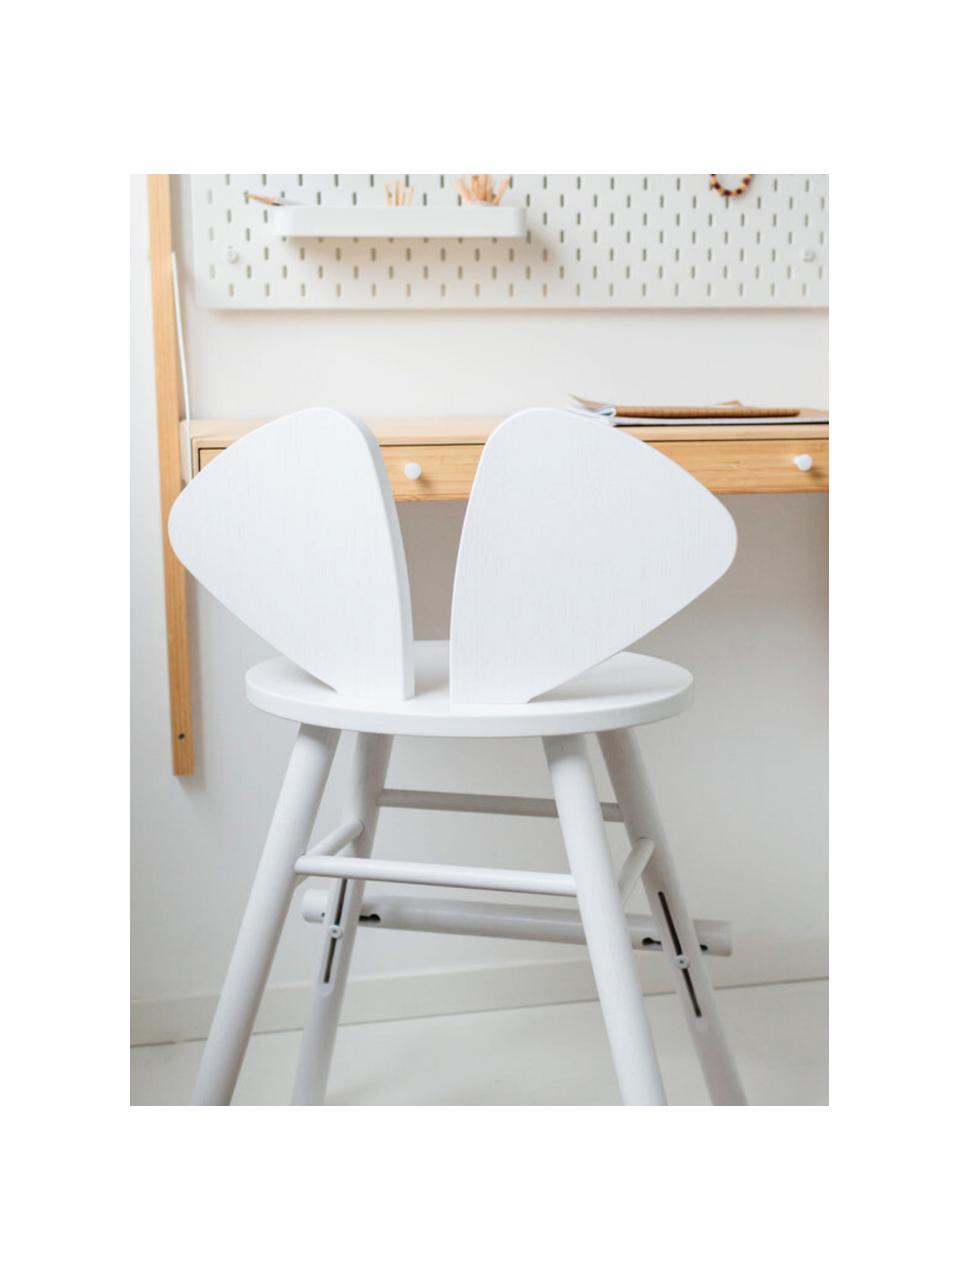 Krzesło dla dzieci z drewna dębowego Mouse, Fornir dębowy lakierowany

Ten produkt jest wykonany z drewna pochodzącego ze zrównoważonych upraw, które posiada certyfikat FSC®., Biały, S 52 x G 41 cm